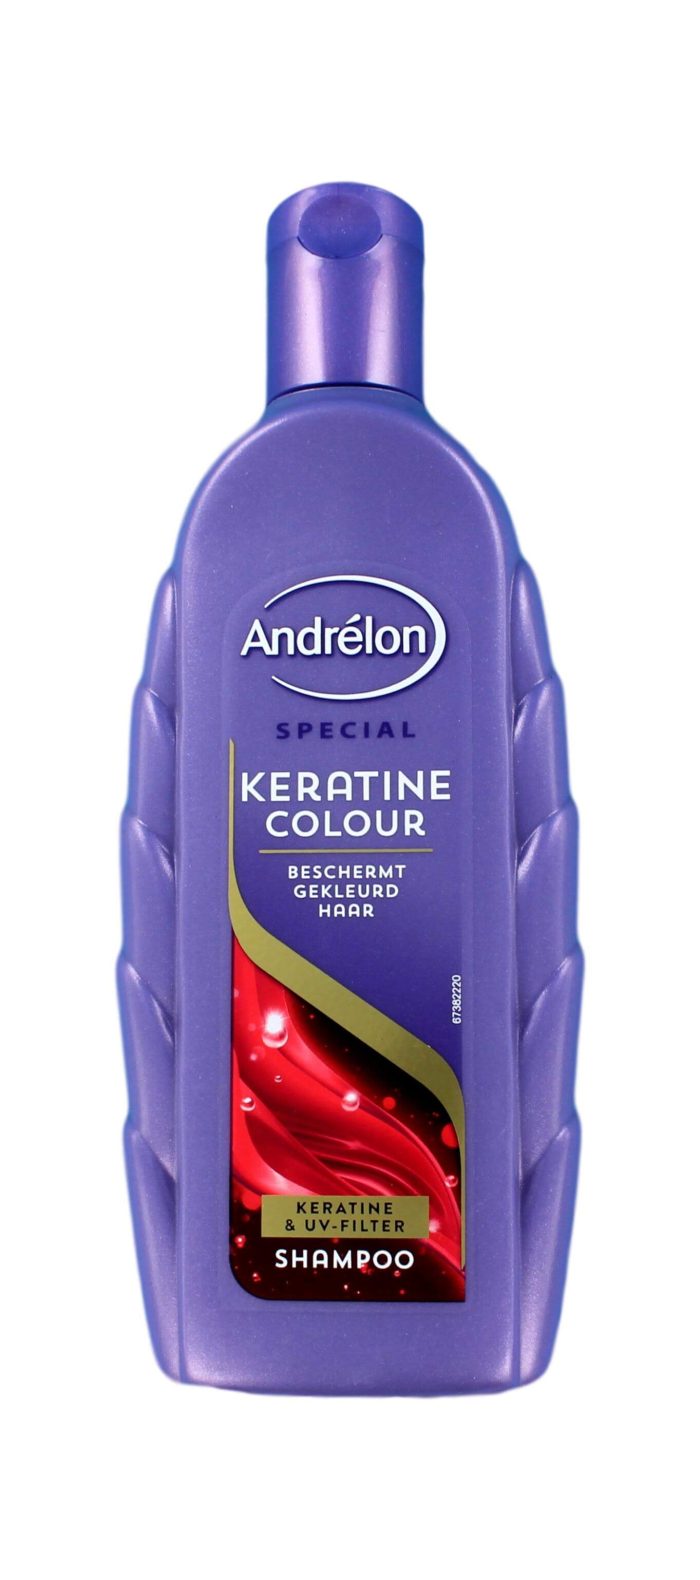 Andrelon Shampoo Keratine Colour, 300 ml